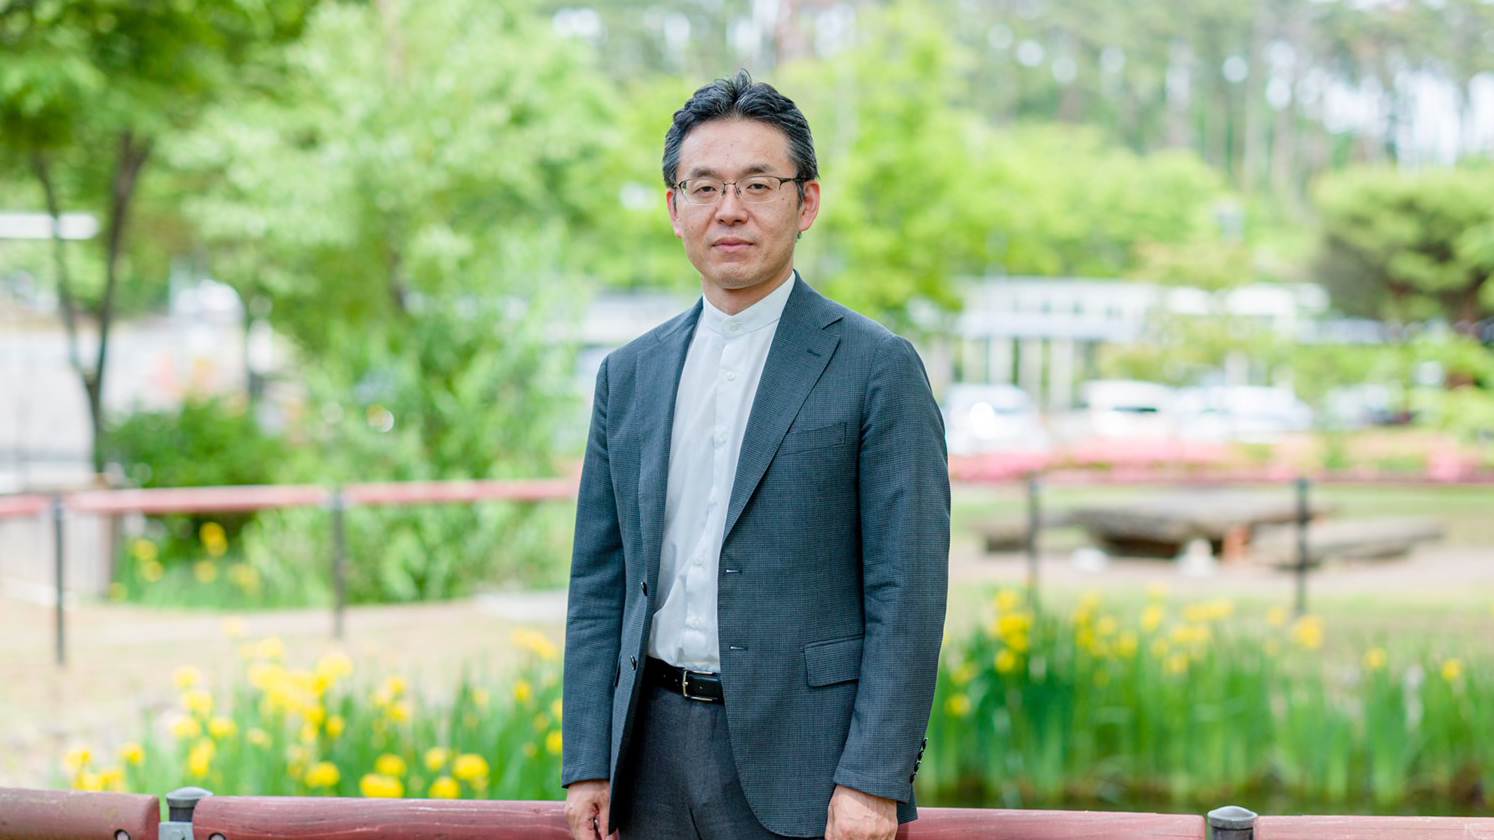 おいしさの科学/フードマネジメント学類石川先生の模擬講義